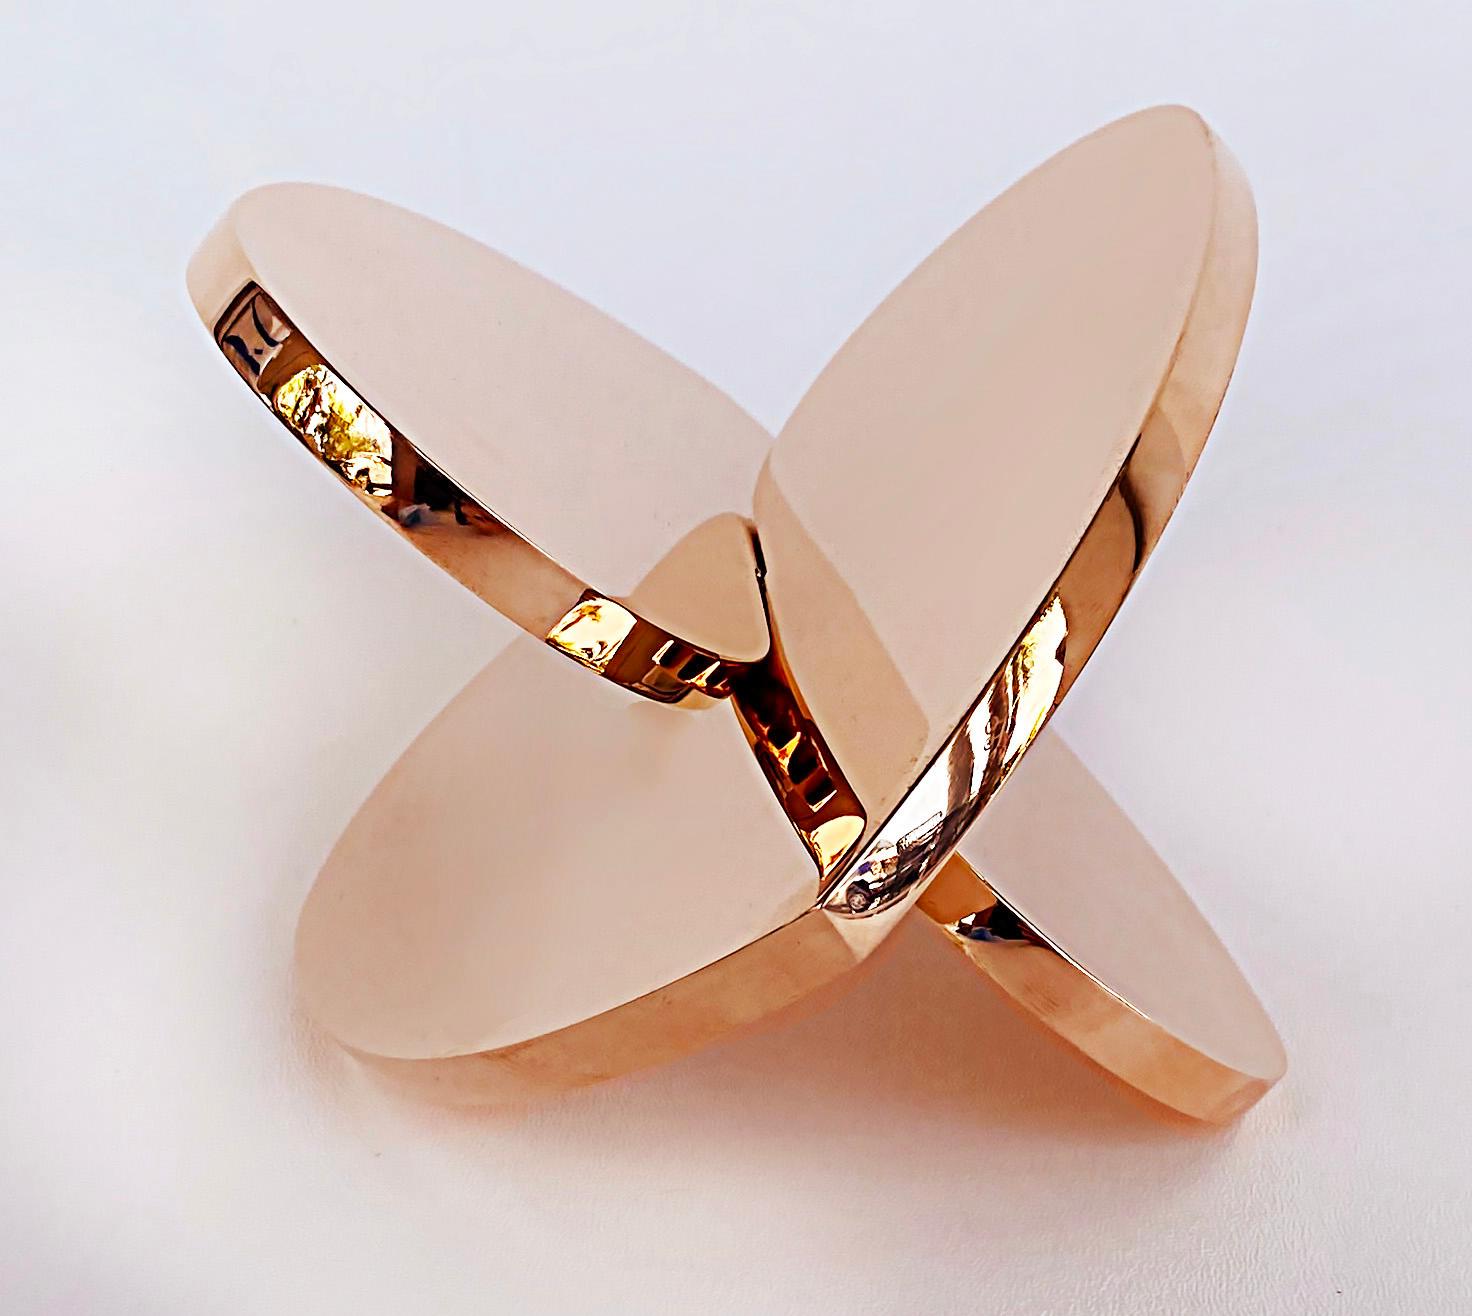 Copper Interlocking Heart Sculptures Michael Gitter & Phu Truong, Solid 3